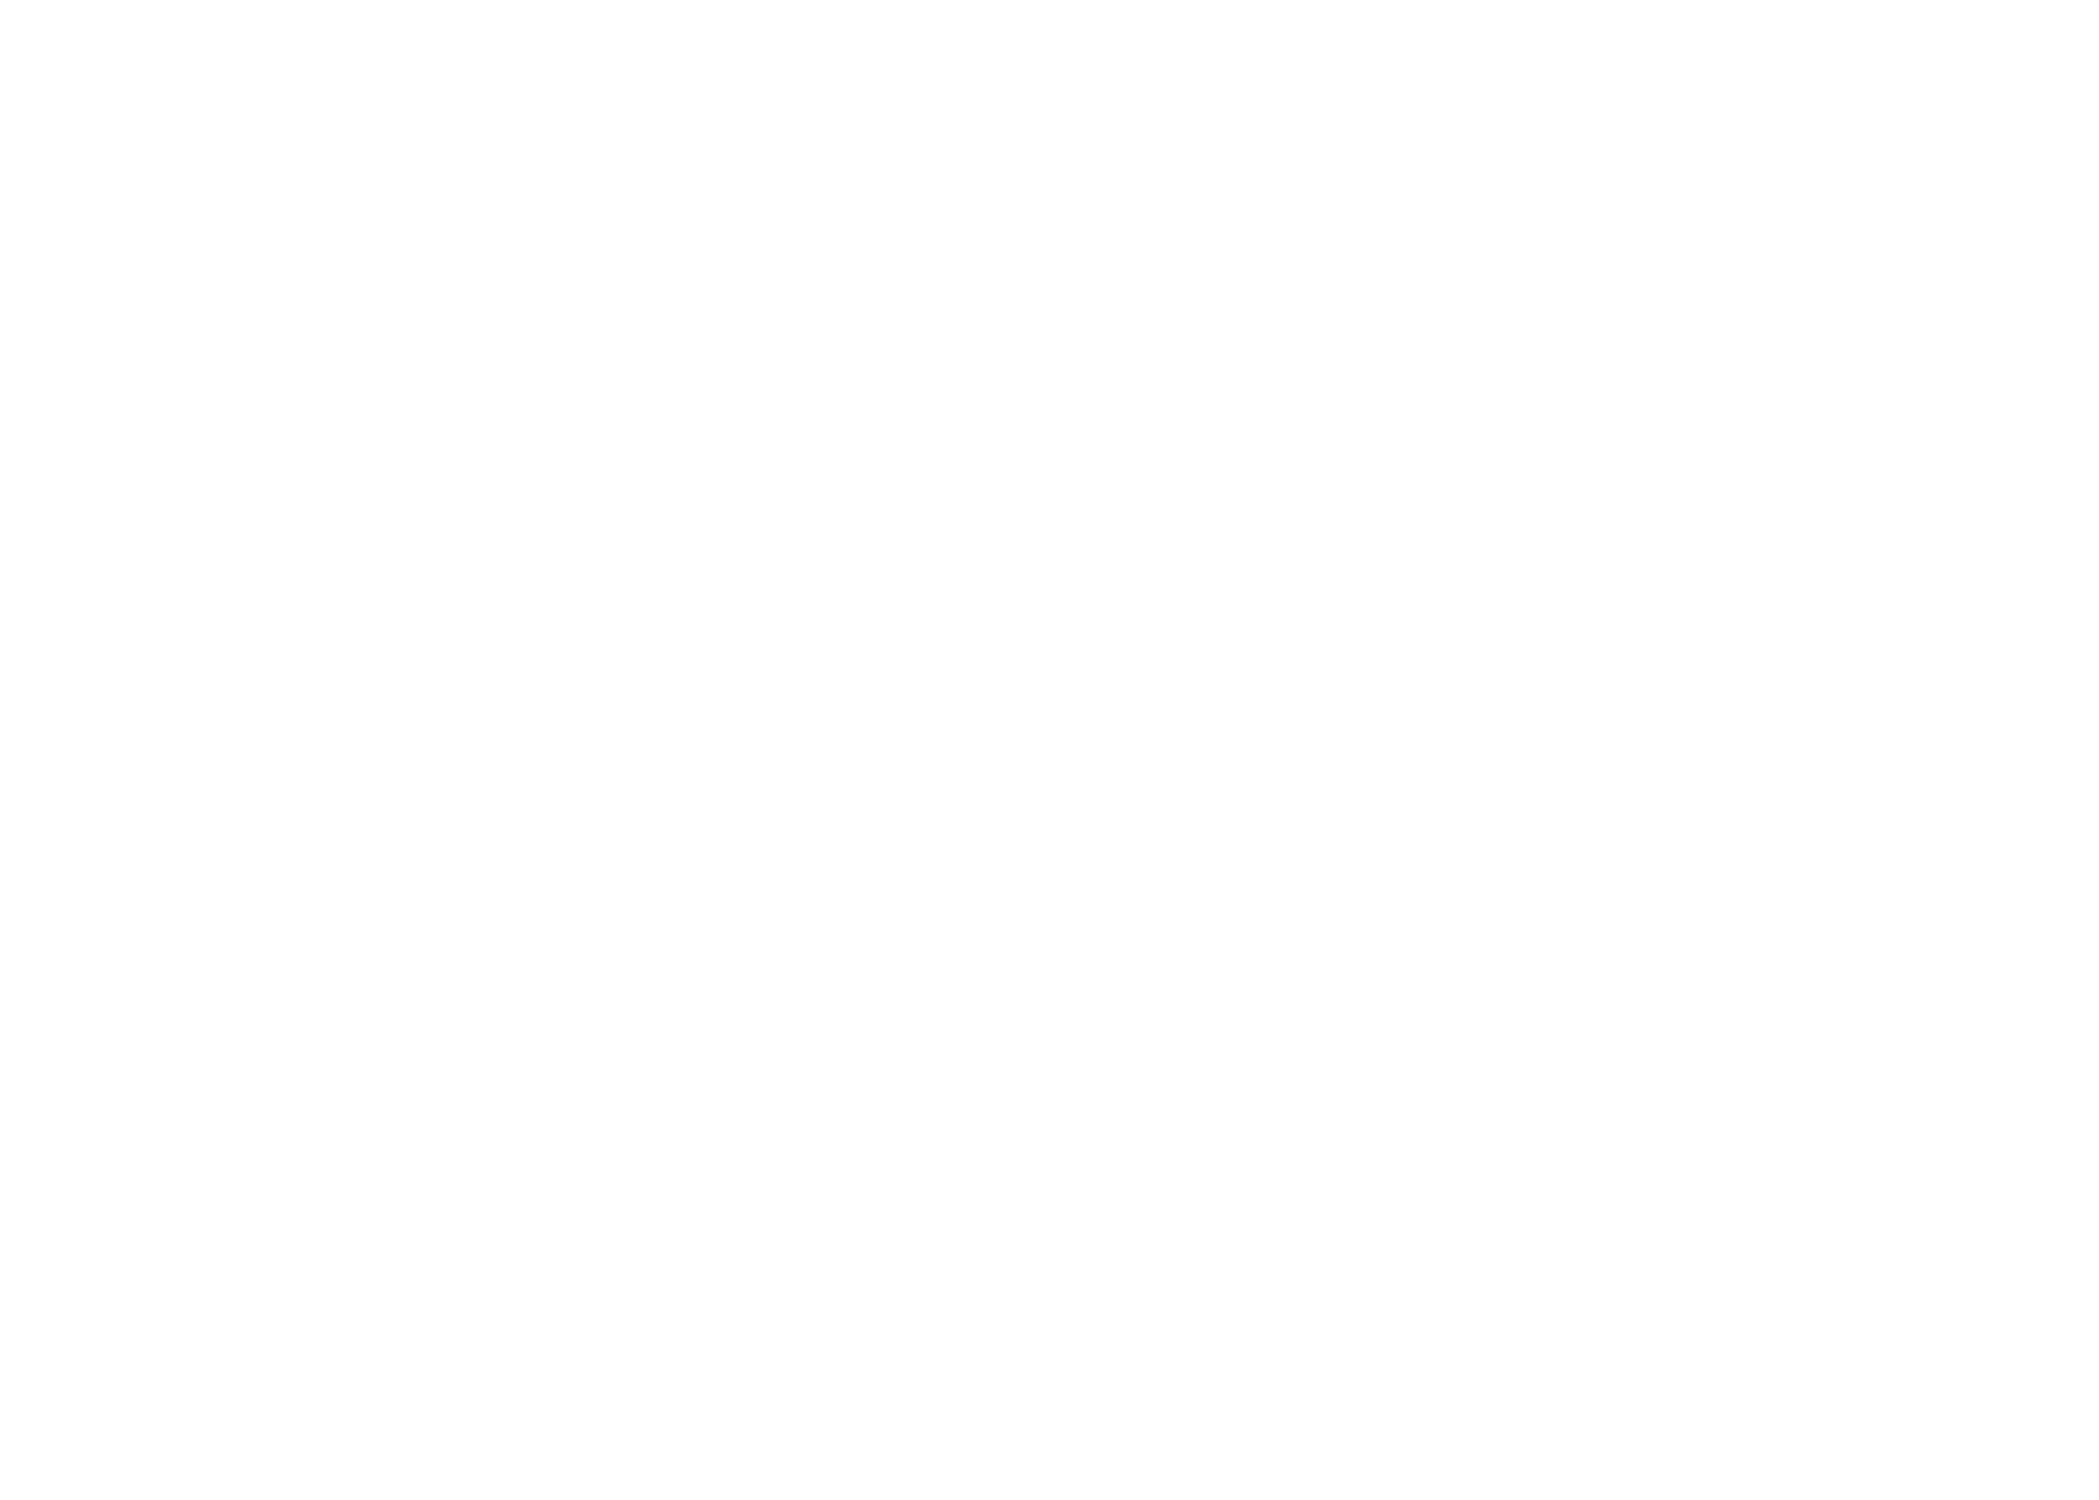 Al Suwaidi Tents